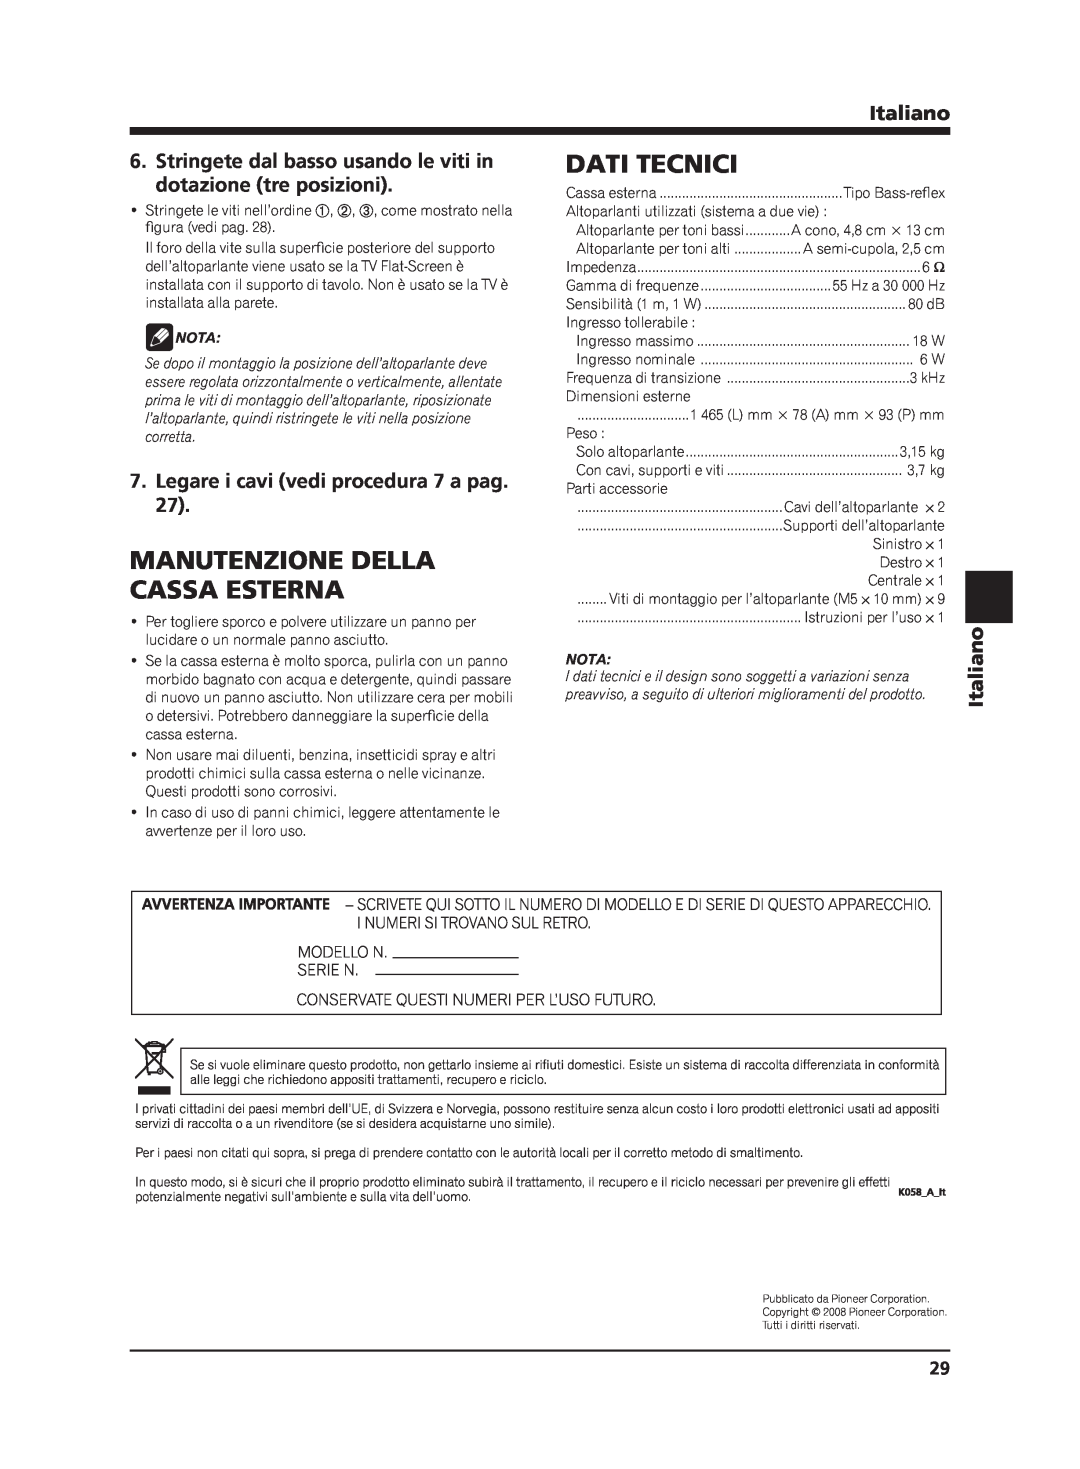 Pioneer PDP-S65 Dati Tecnici, Manutenzione Della, Cassa Esterna, Stringete dal basso usando le viti in, Italiano, Nota 